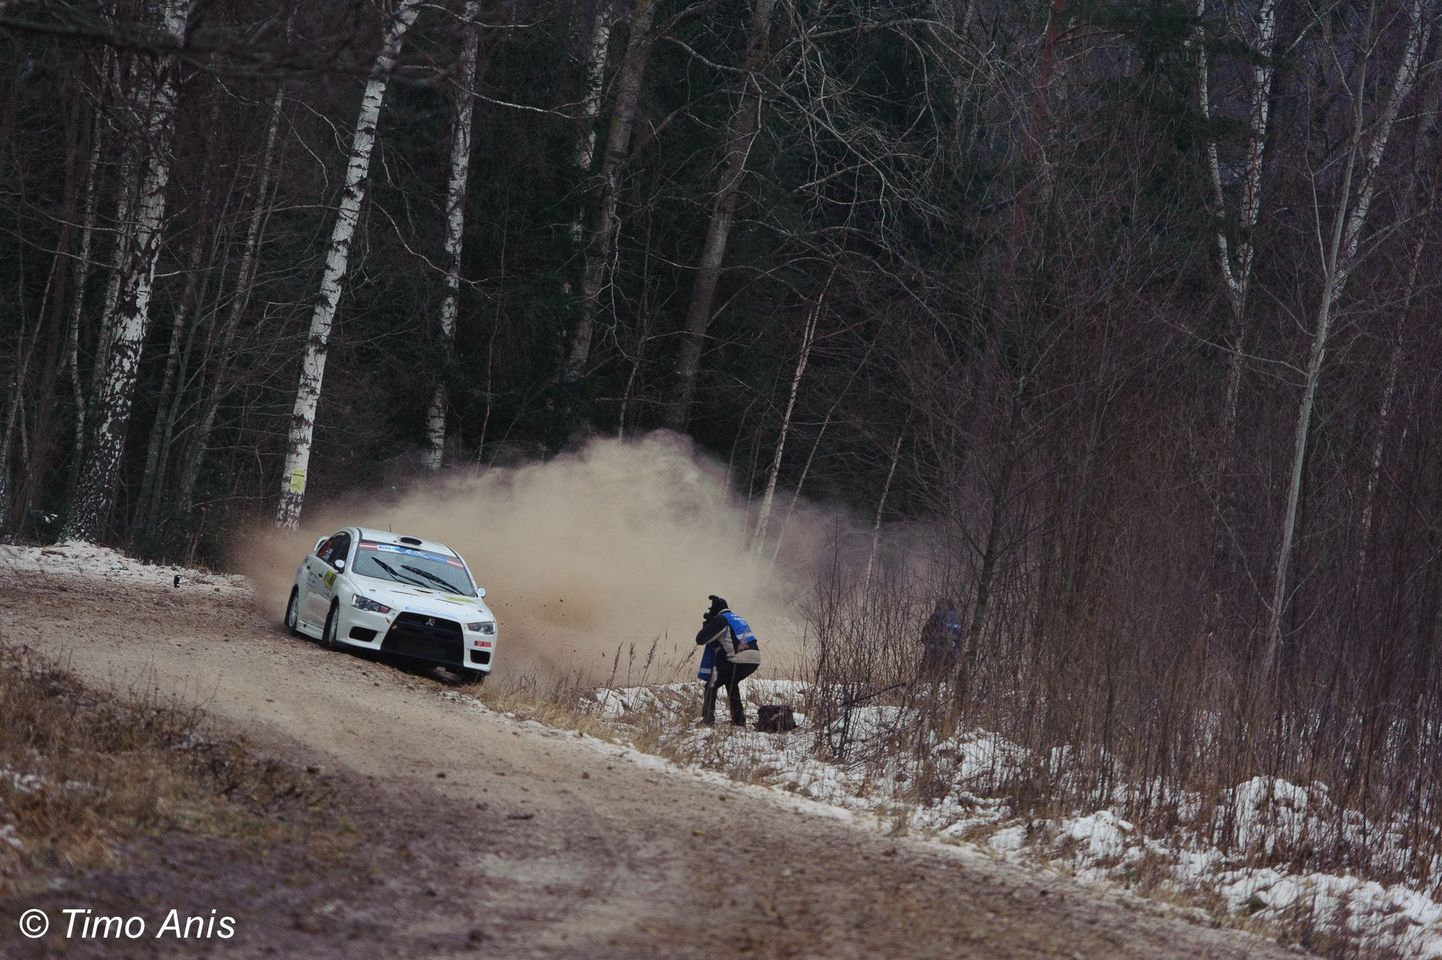 Nädalavahetusel peeti Lätis Liepajas autoralli ERC-sarja teine etapp, kus tegid kaasa ka kolm Eesti rallipaari - Timmu Kõrge - Erki Pints (Ford Fiesta R5), Siim Plangi - Marek Sarapuu (Mitsubishi Lancer Evo X) ja Raul Jeets - Andrus Toom (Ford Fiesta R5).